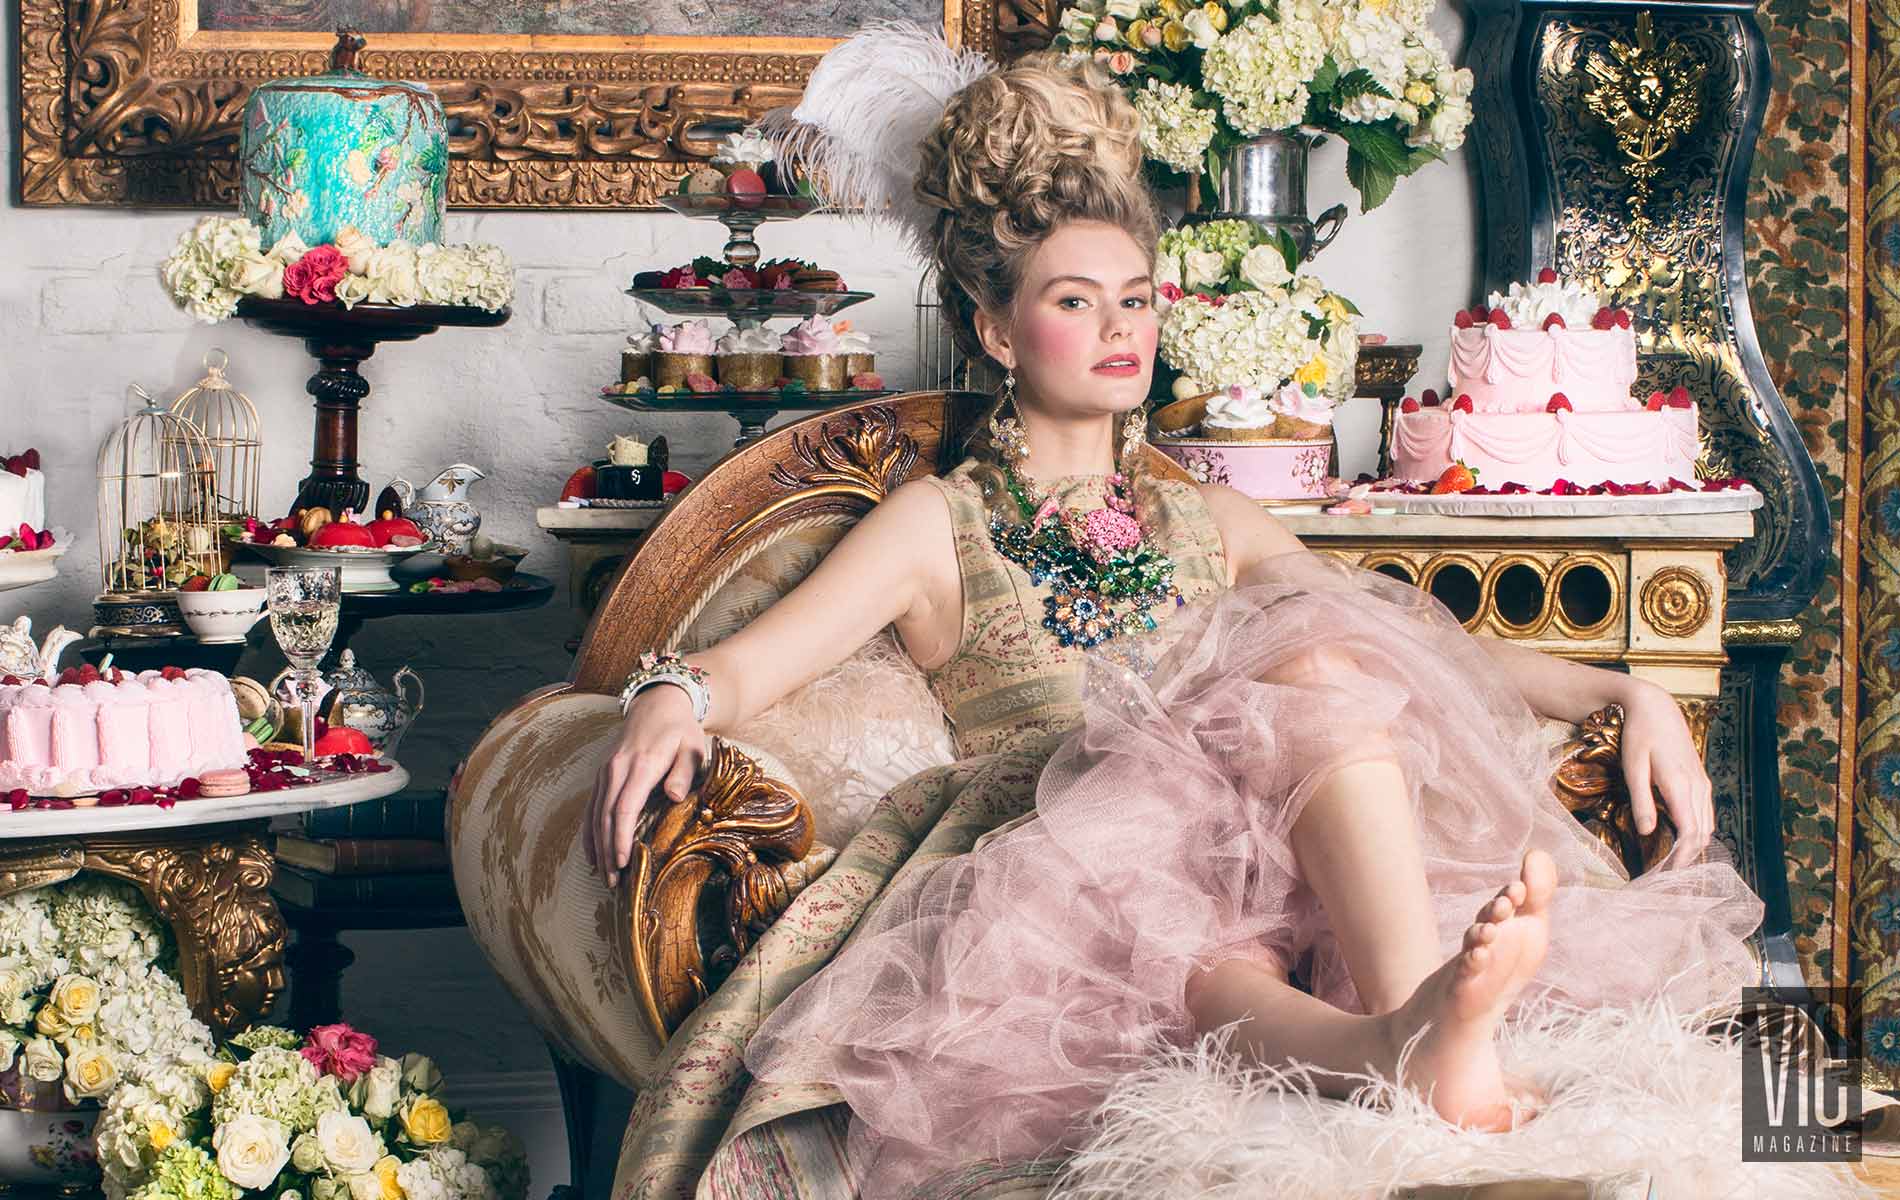 2015 South Walton Fashion Week Winner Miranda Abney in Marie Antoinette Photo Shoot